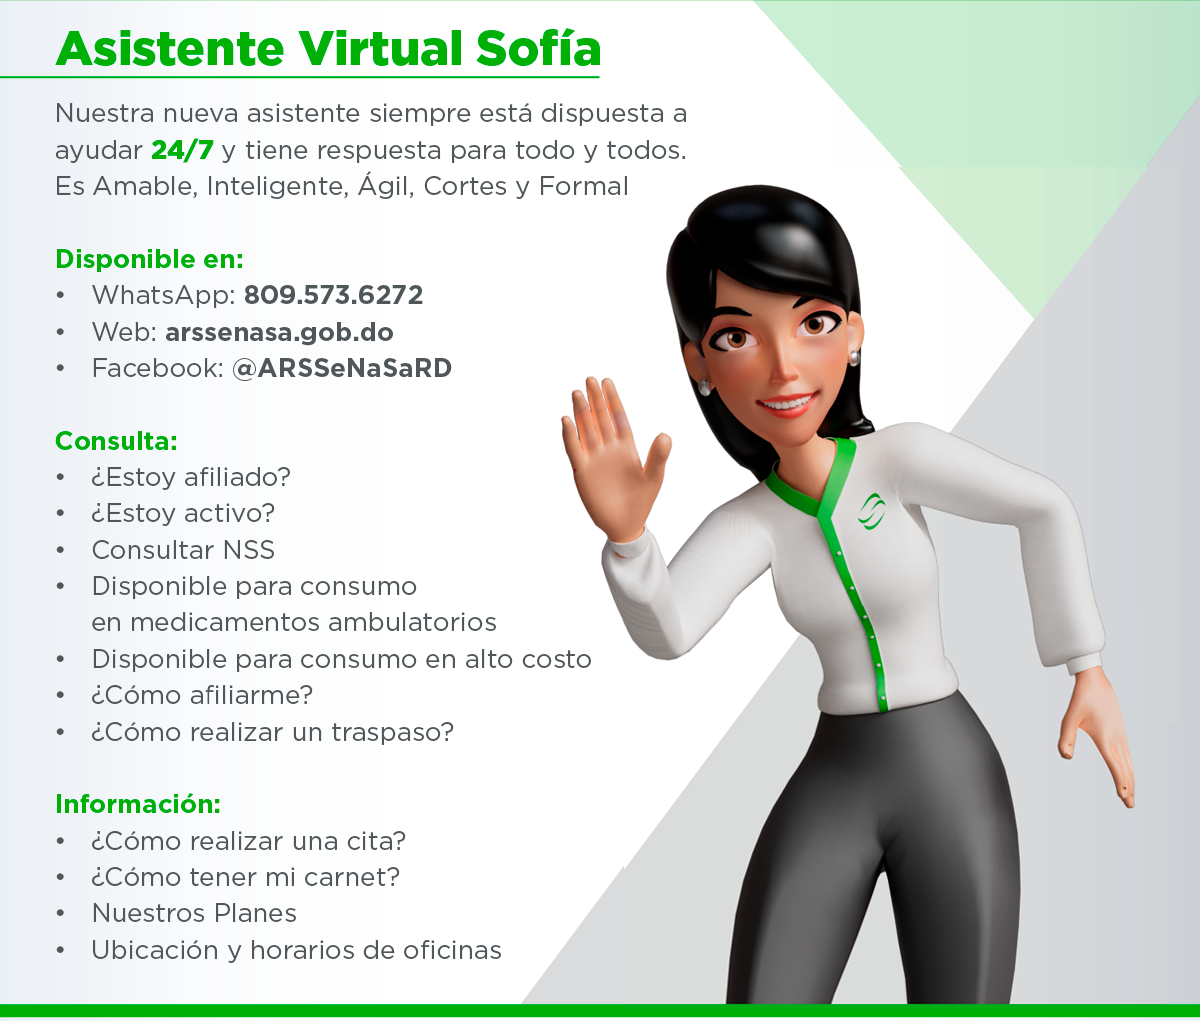 Asistente virtual, Sofía está disponible 24/7, con respuestas a todo lo que necesites.